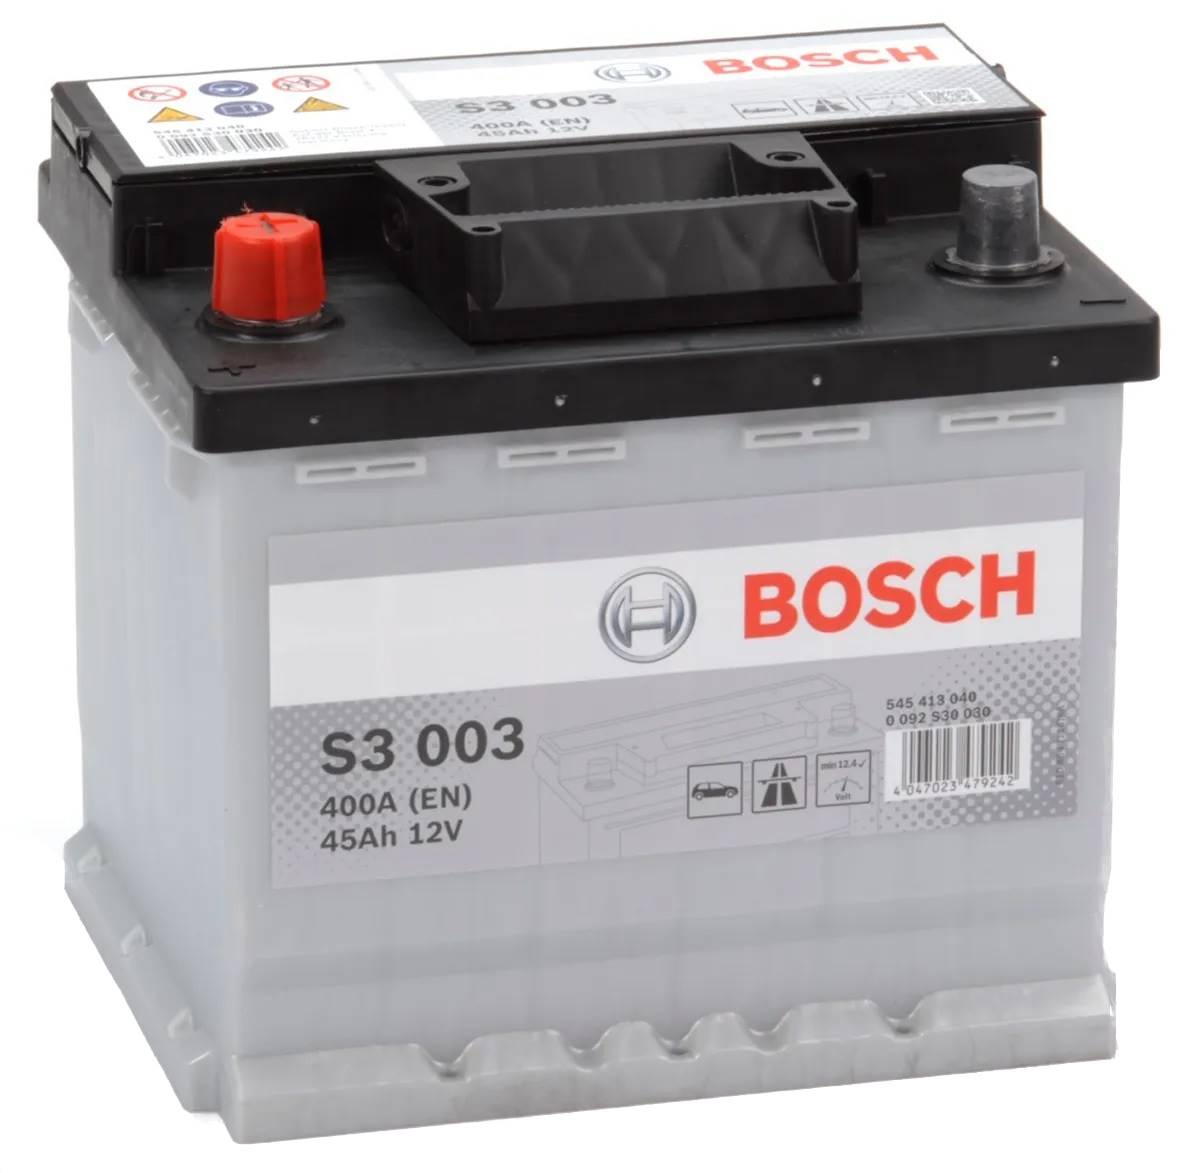 Bosch Car Service au service de votre batterie